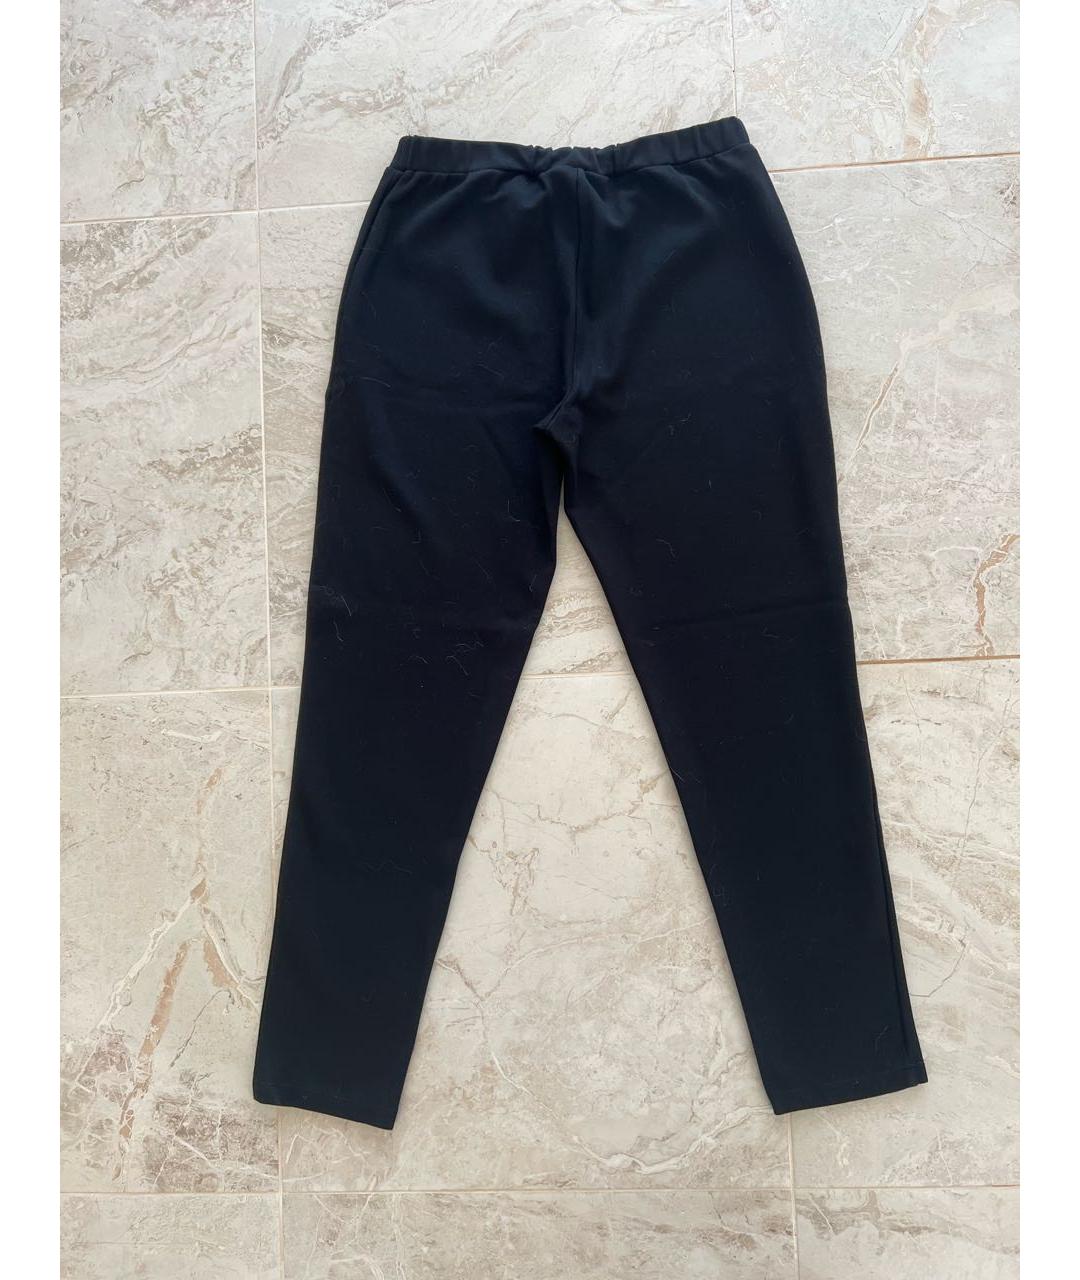 TWIN-SET Черные брюки и шорты, фото 2